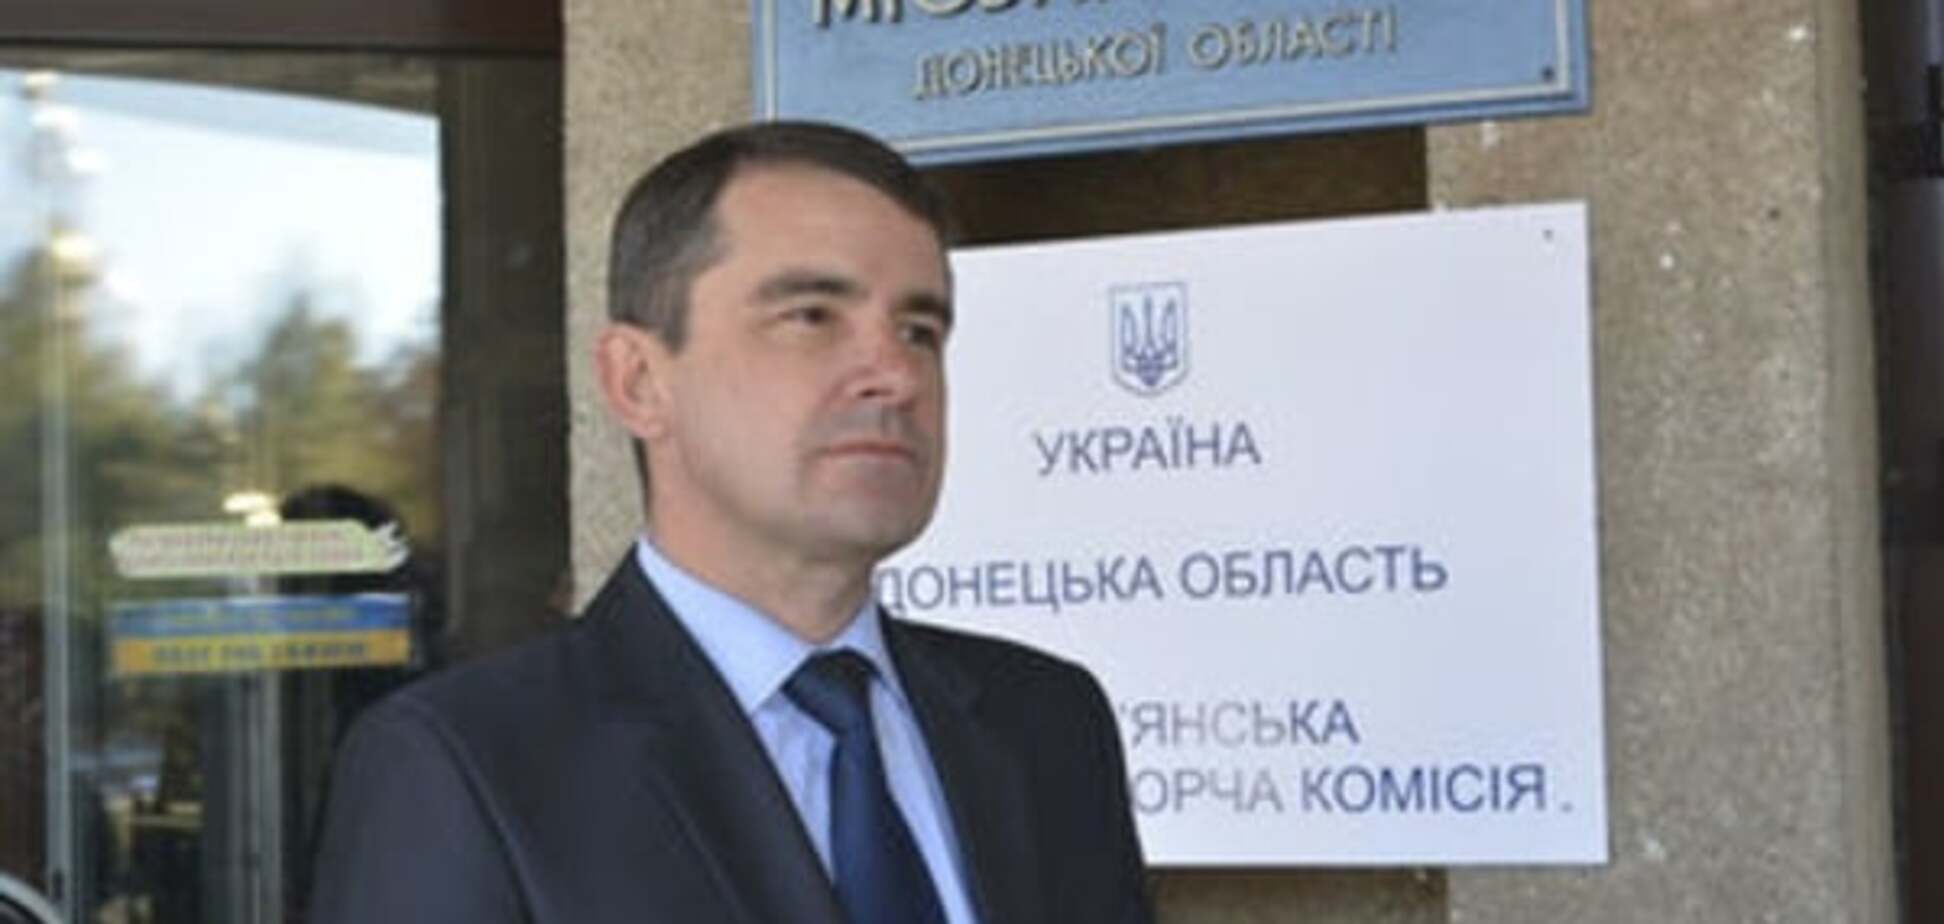 Не повторять ошибки Штепы: мэр Славянска пообещал заговорить на украинском